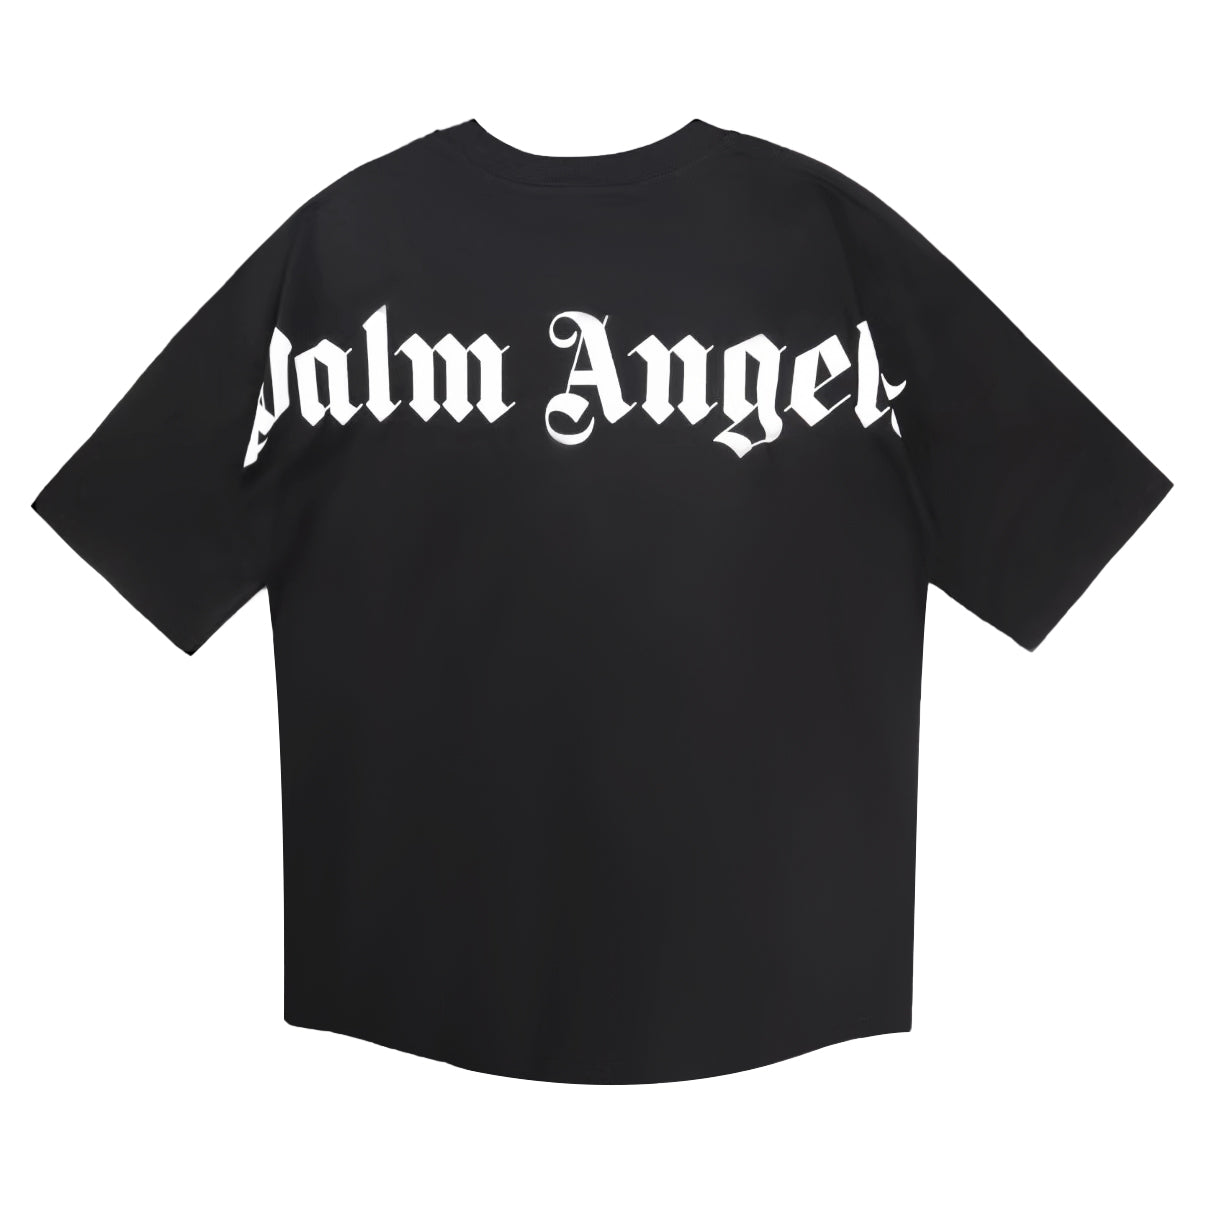 T-shirt palm angels